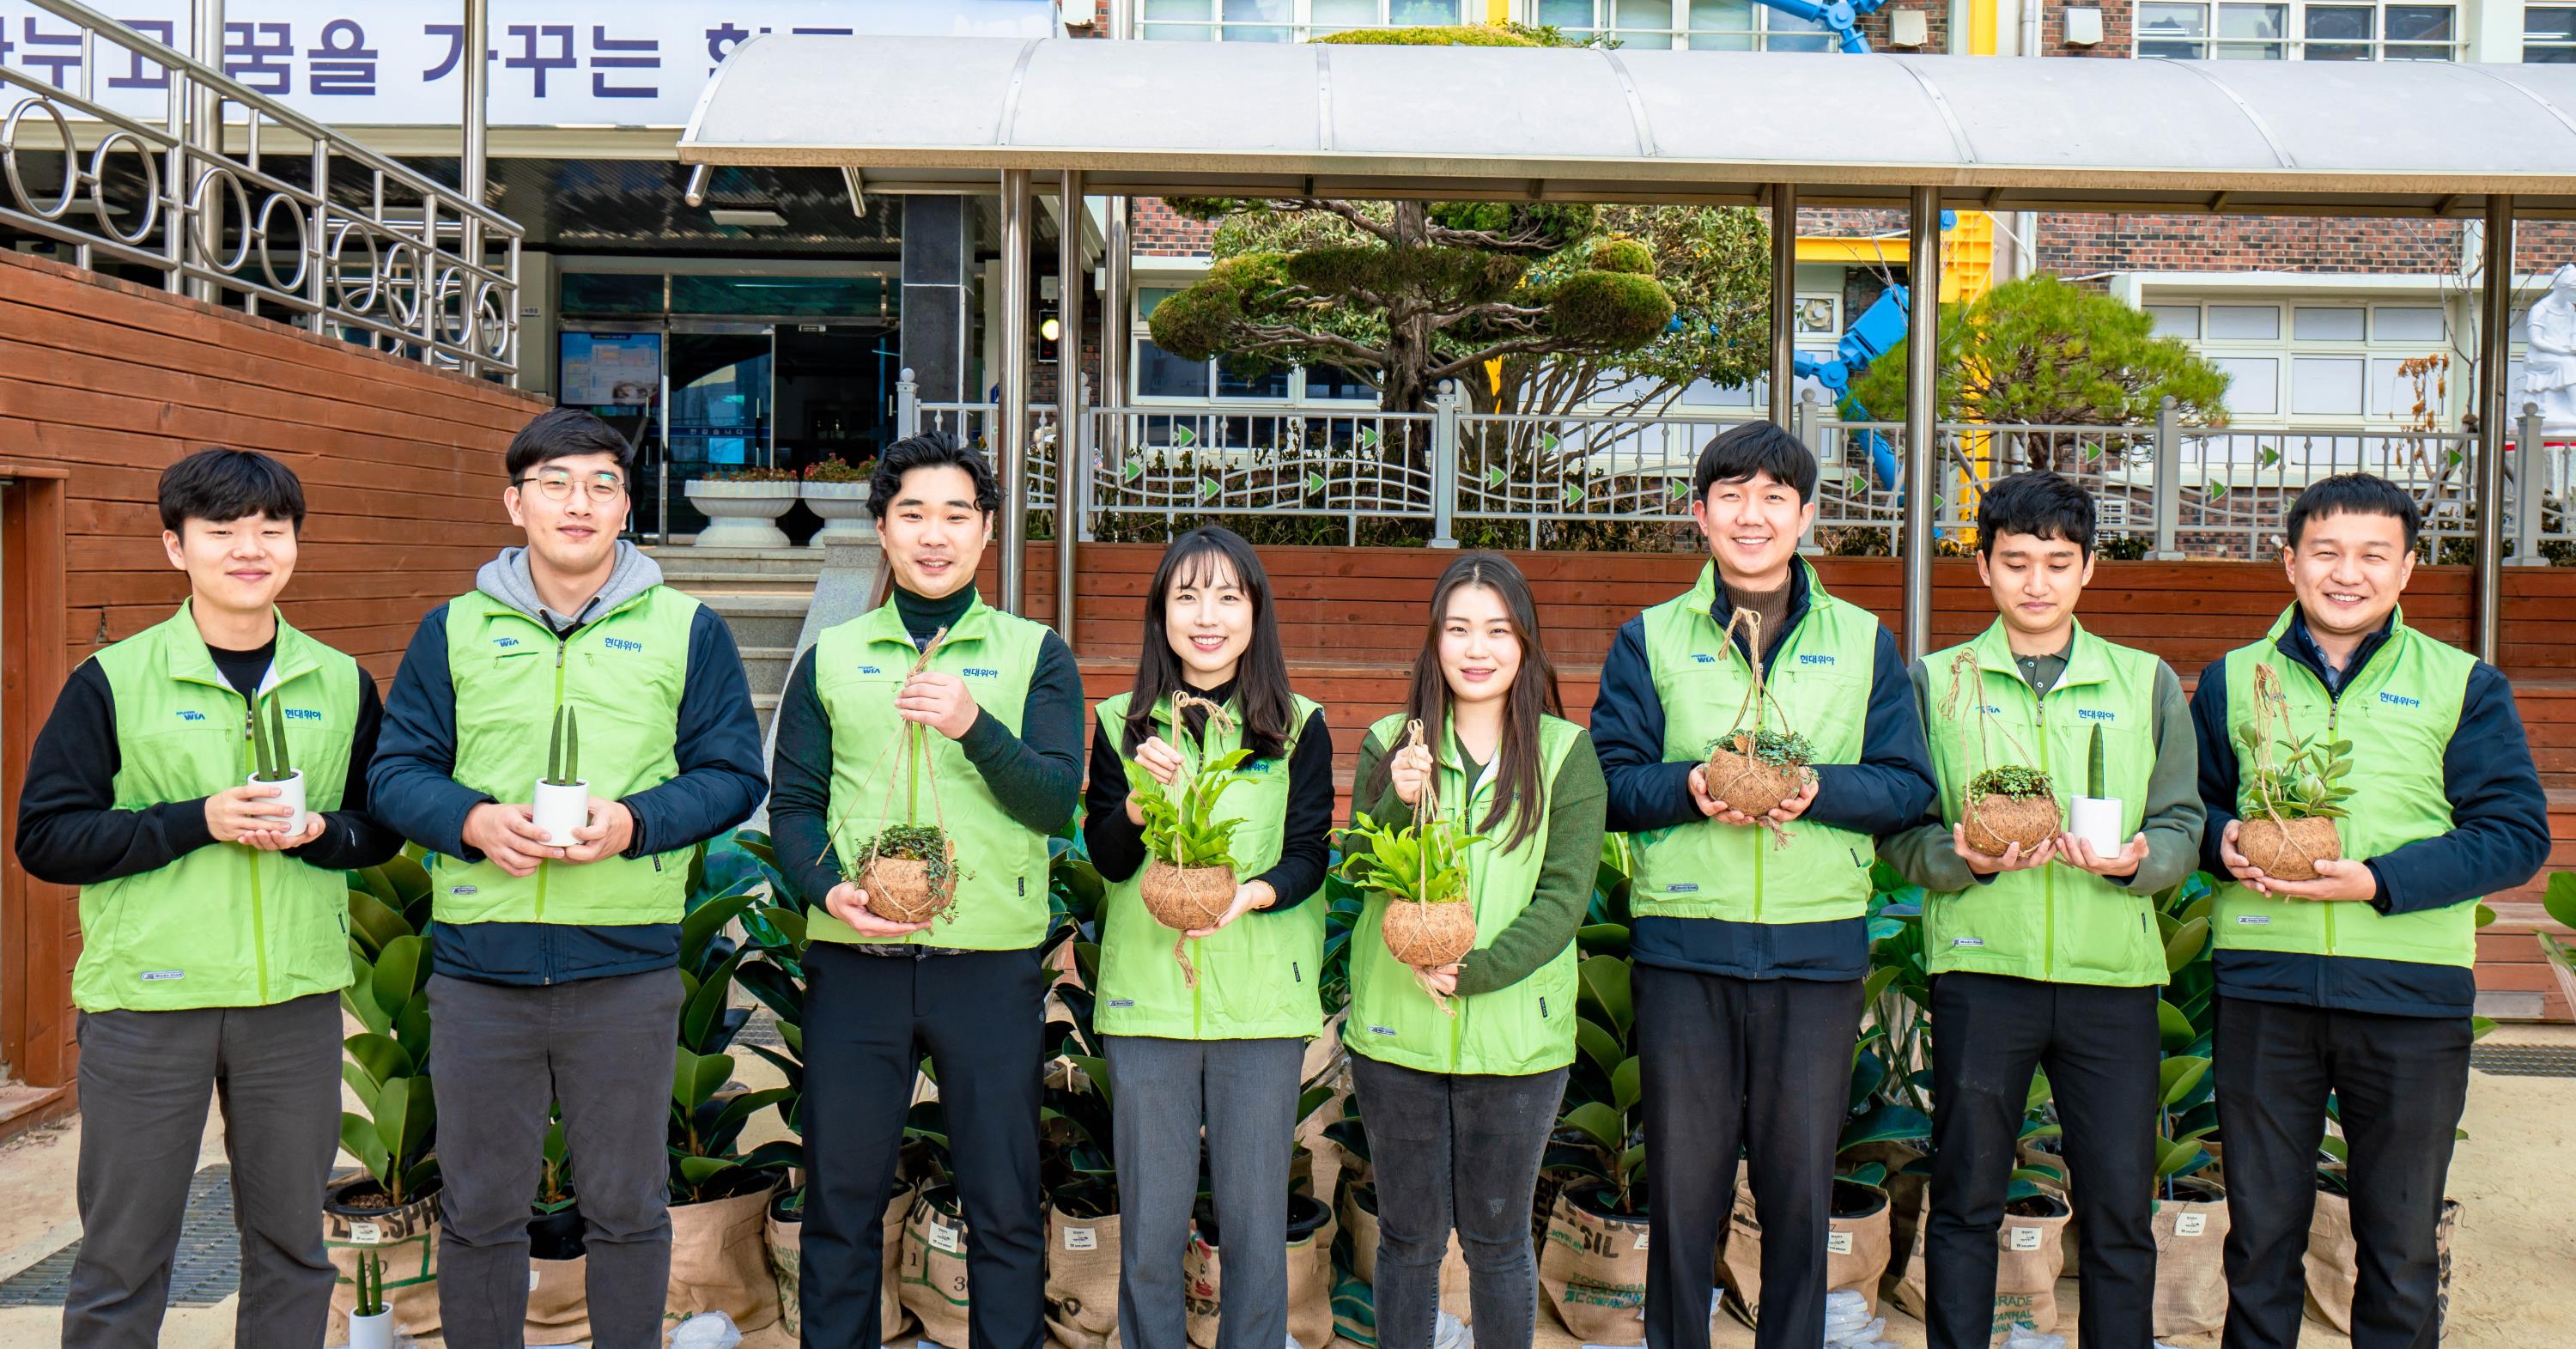 현대위아 직원들이 19일 ‘현대위아 초록학교’로 꼽힌 경상남도 창원시 남양초등학교에서 교실숲을 만들 화분을 들고 기념사진을 찍고 있다.